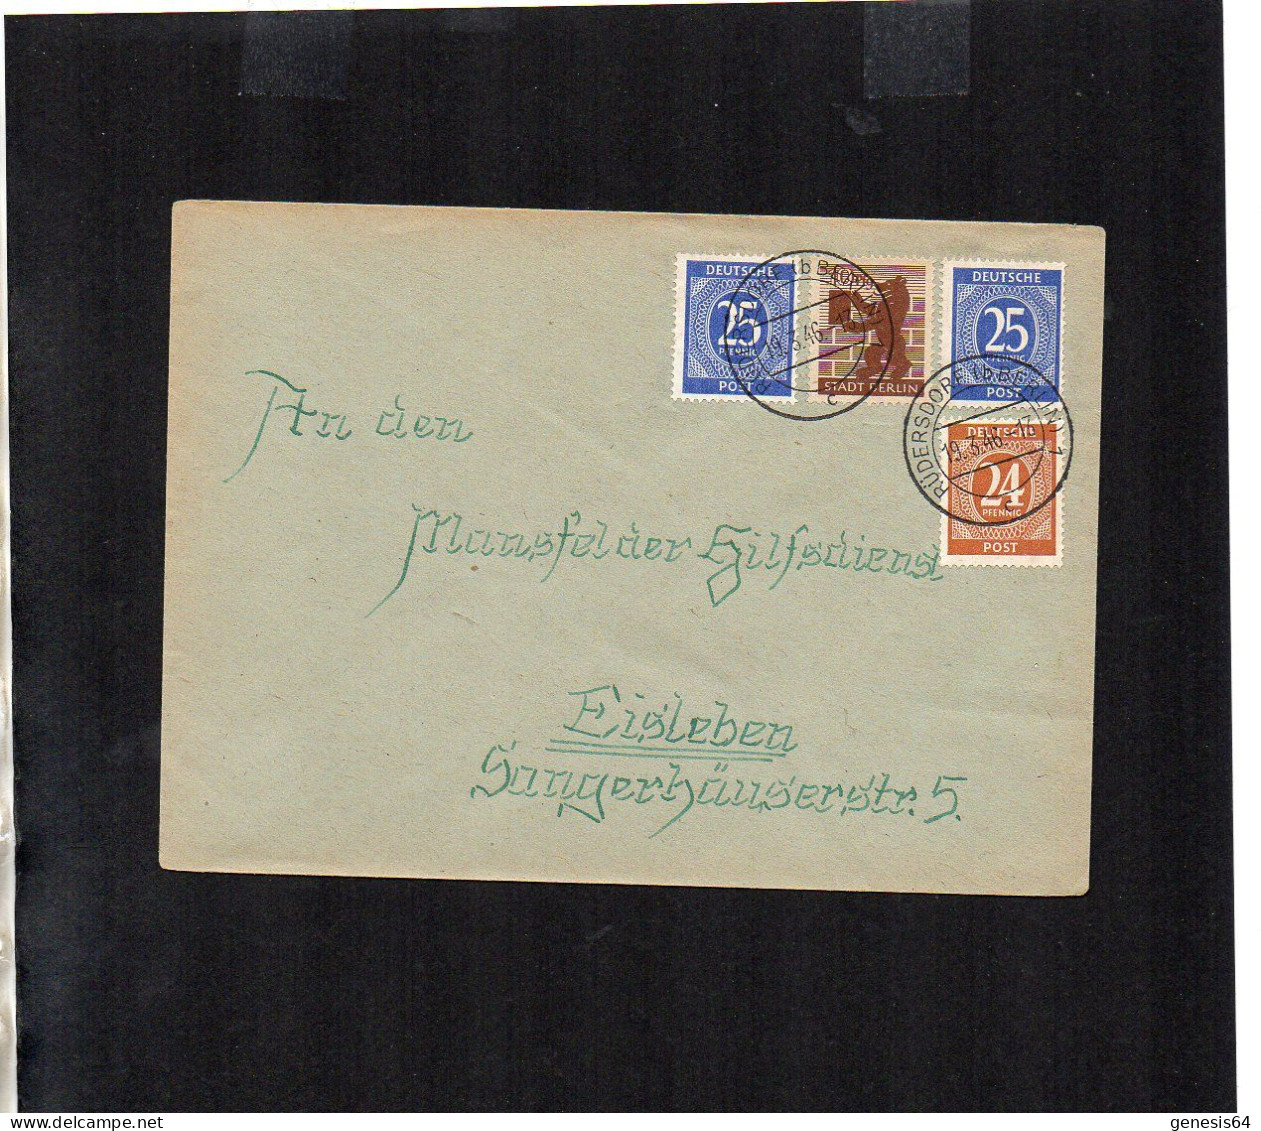 Berlin Brandenburg - Brief Mit Mischfrankatur - Rüdersdorf - 19.3.46 - P2 (1ZKSBZ062) - Berlin & Brandenburg